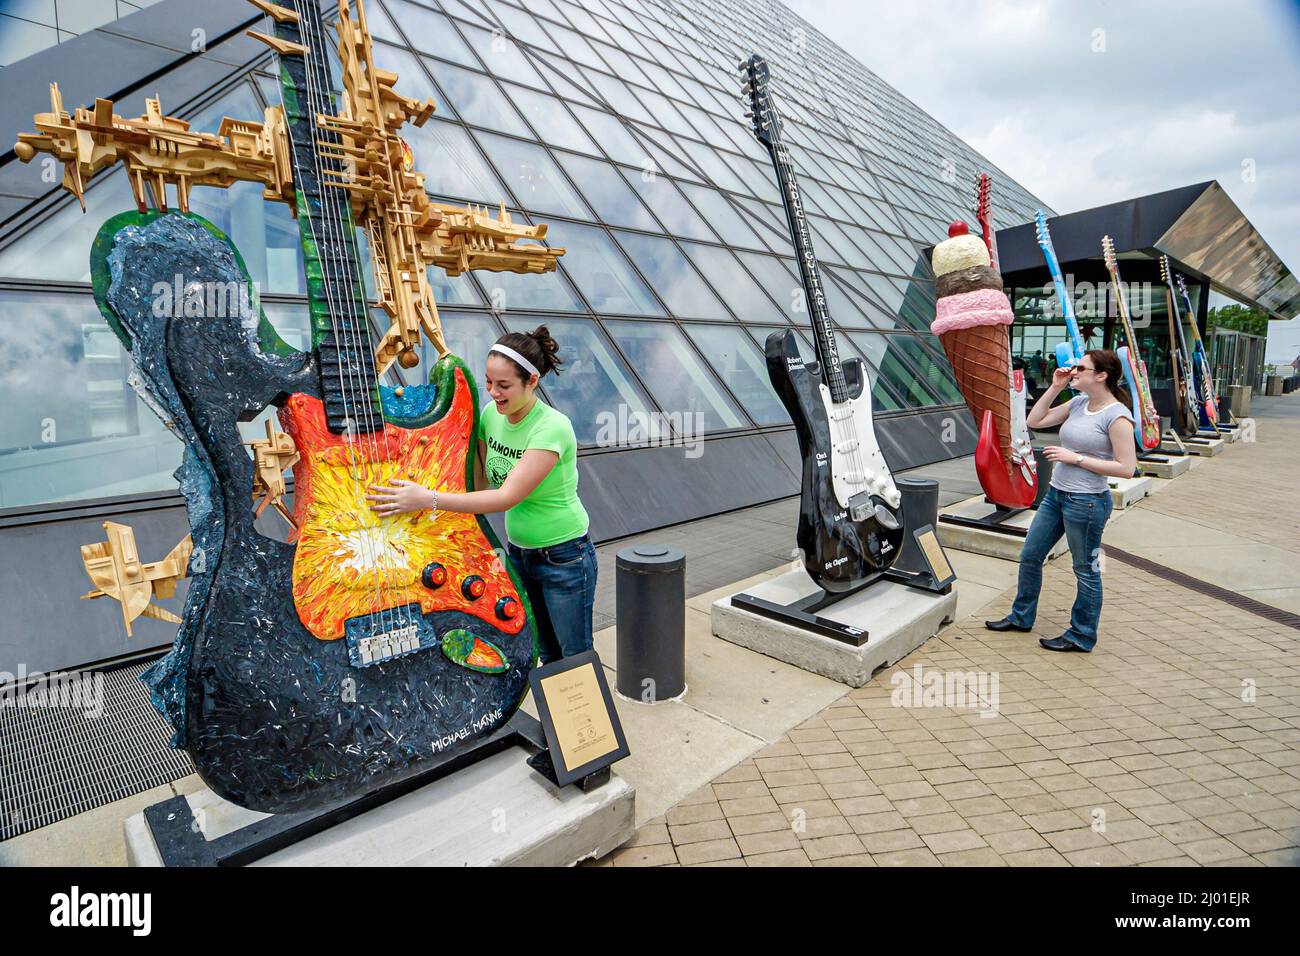 Cleveland Ohio, Rock & Roll Hall of Fame Museum, Sammlungsausstellung, GuitarMania öffentliche Kunst Riese E-Gitarre Teenager Mädchen weiblich spielen Stockfoto